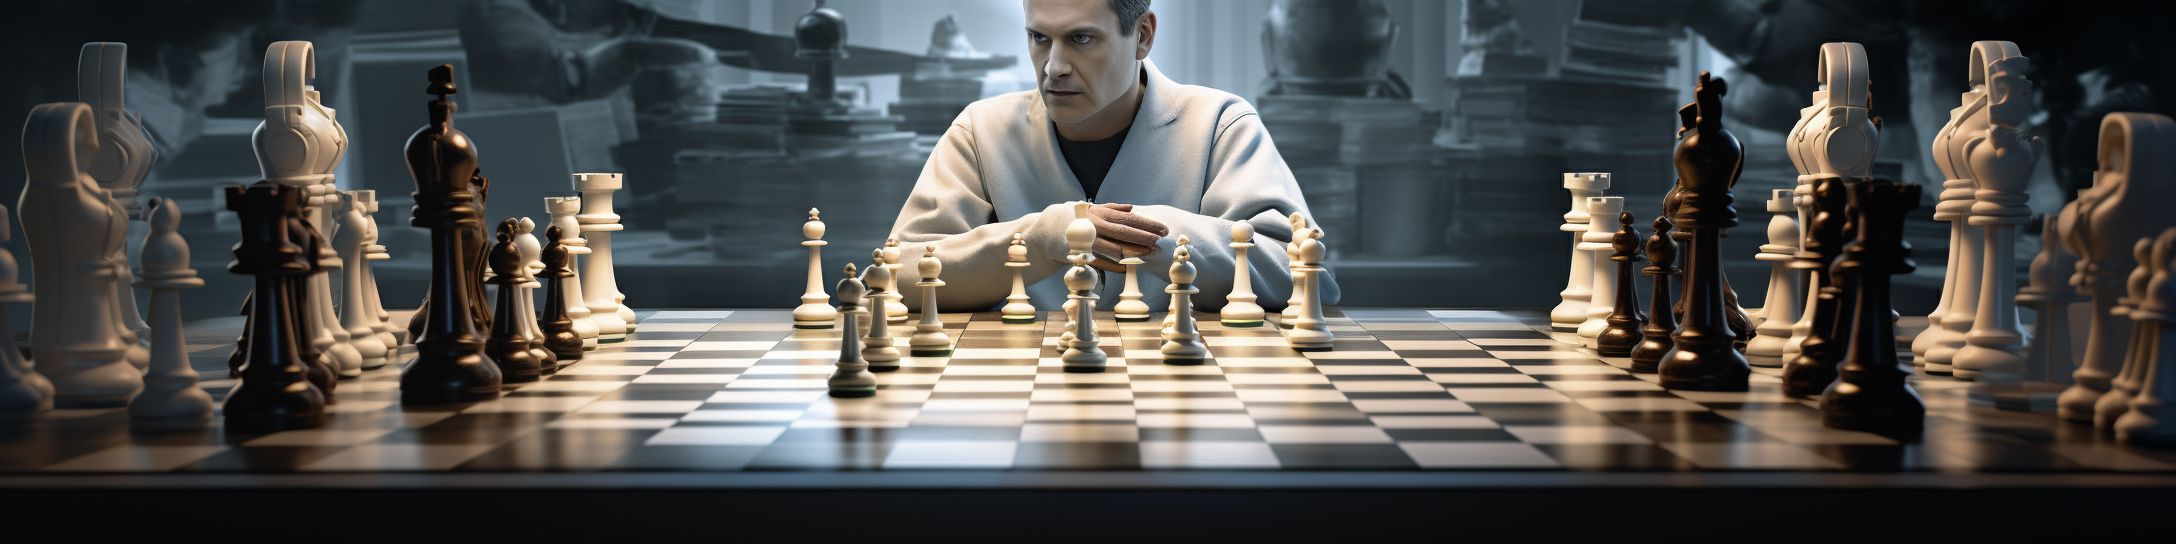  L'impact de la technologie sur les compétitions d'échecs